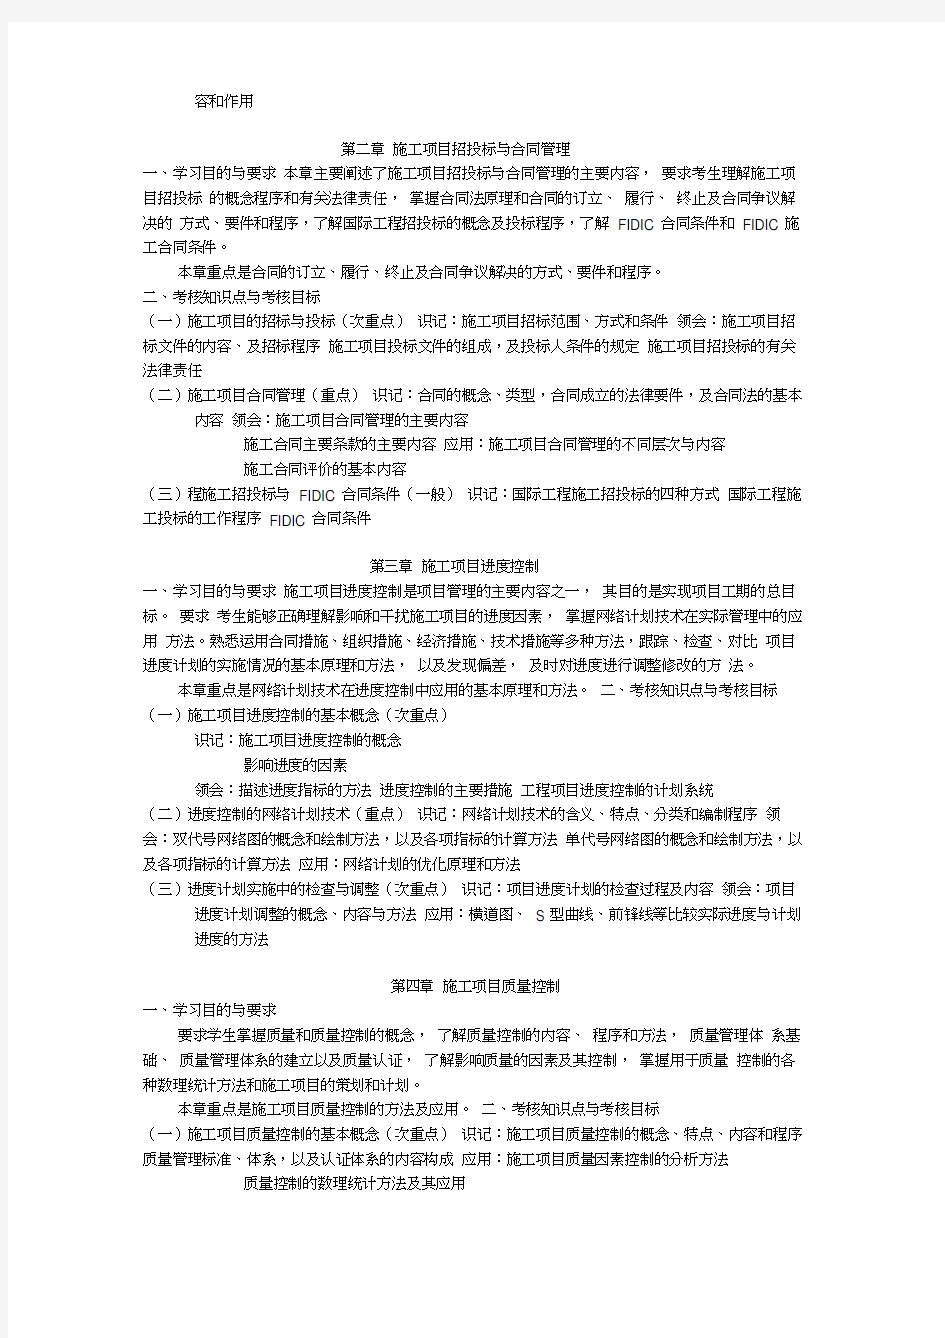 天津2012年自考“工程建设项目管理”课程考试大纲